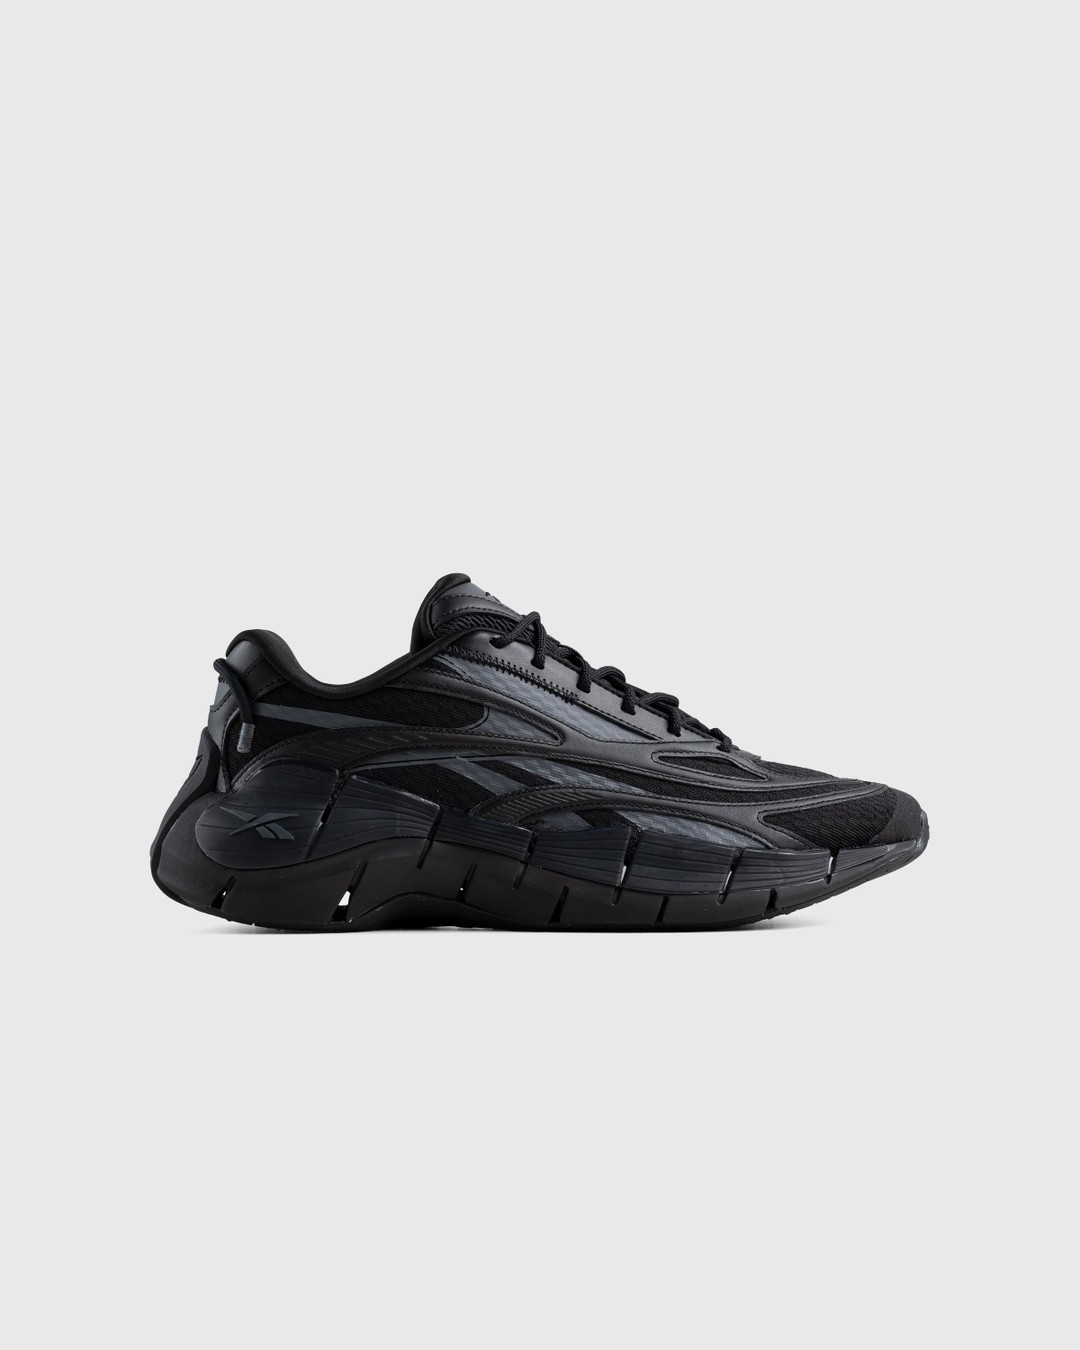 Reebok – Zig Kinetica 2.5 Black - Sneakers - Black - Image 1